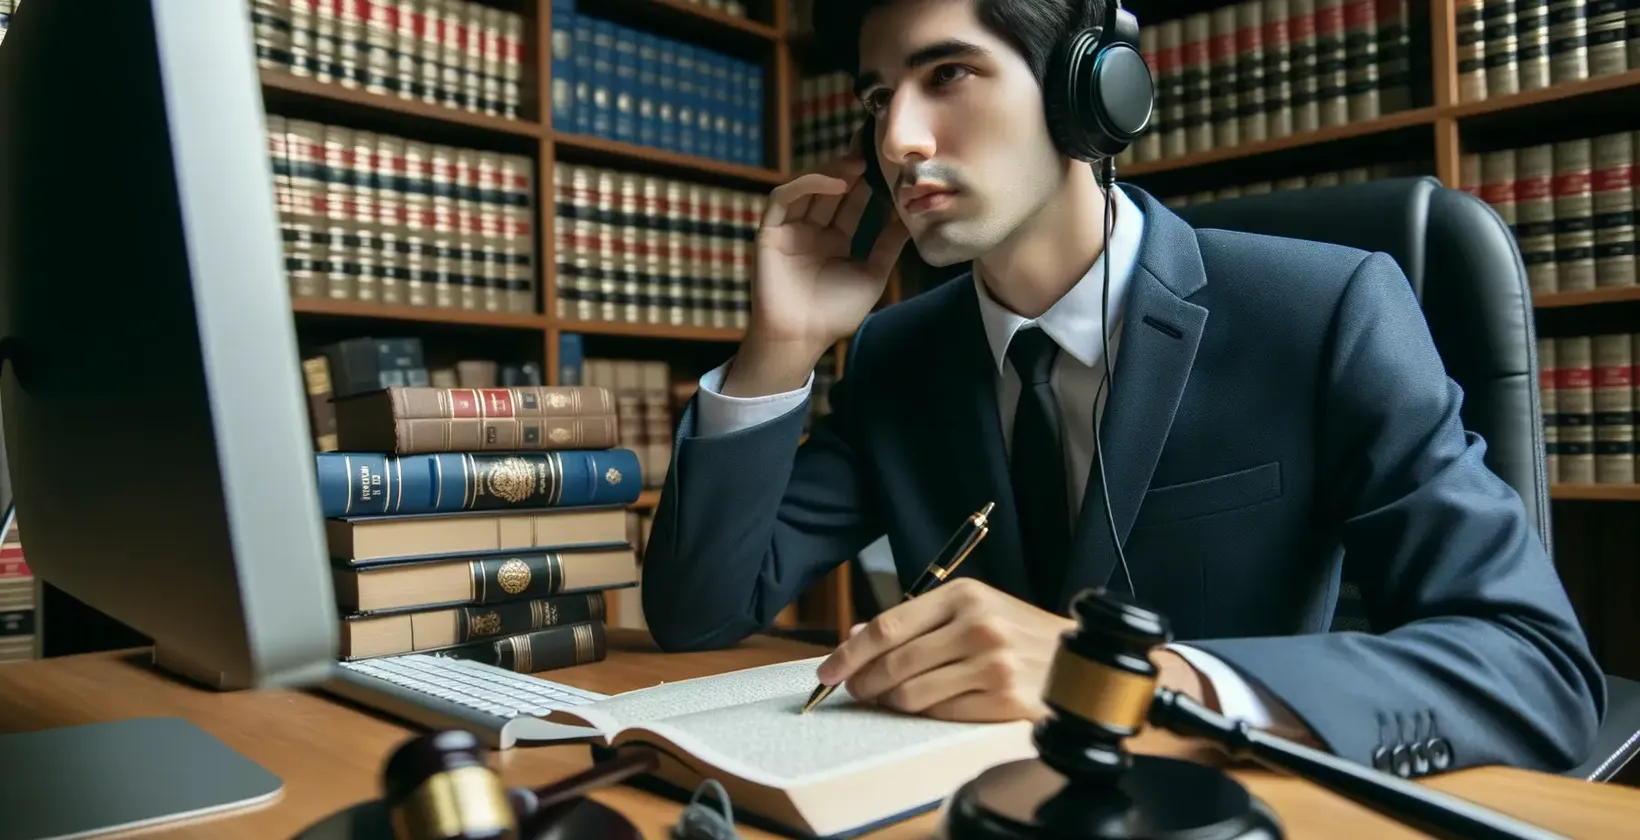 Storitve pravnega prepisovanja, ki jih predstavi strokovnjak s slušalkami v pravni knjižnici.